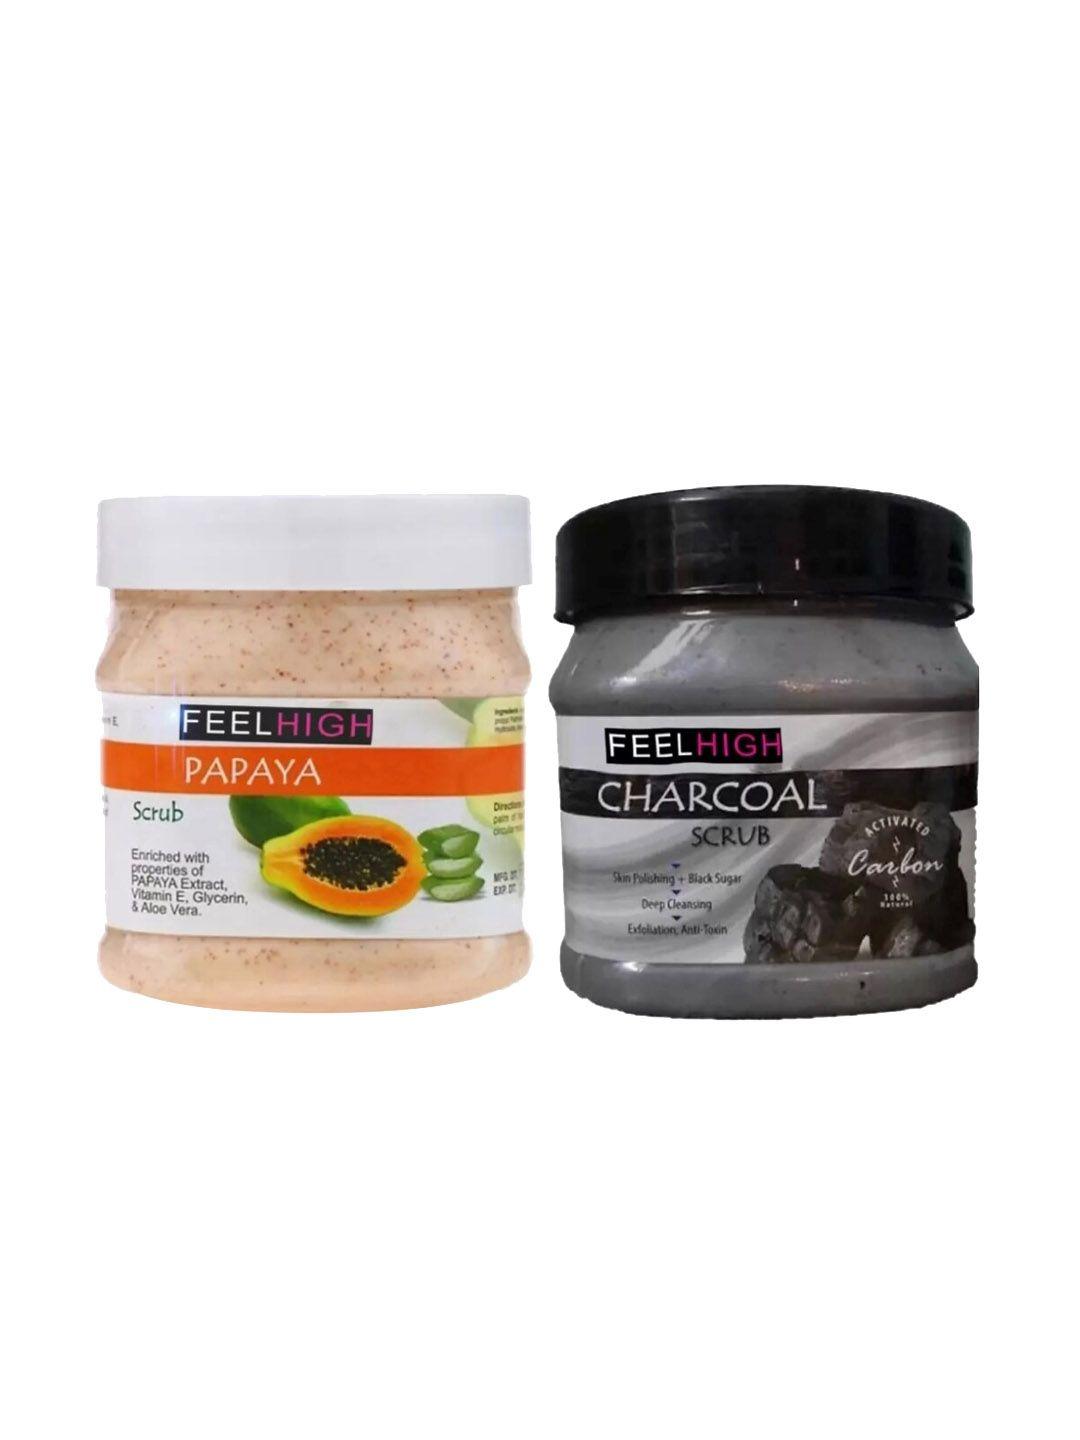 feelhigh set of 2 papaya scrub & charcoal scrub for face & body exfoliators 500 ml each